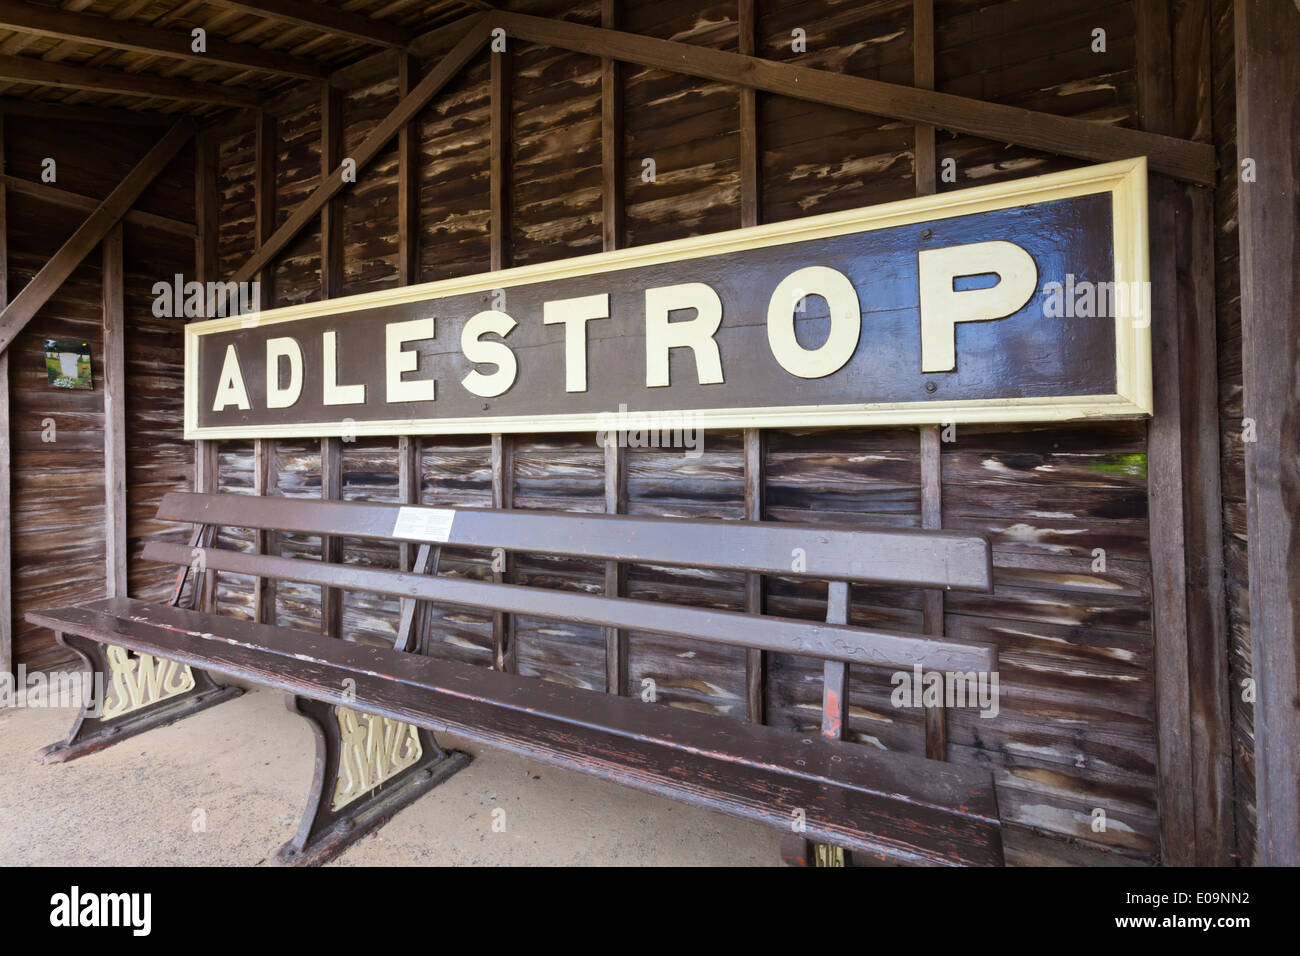 Das Railway Station Zeichen für Cotswold-Dorf Adlestrop - inspirierte das Gedicht durch den ersten Weltkrieg Dichter Edward Thomas Stockfoto